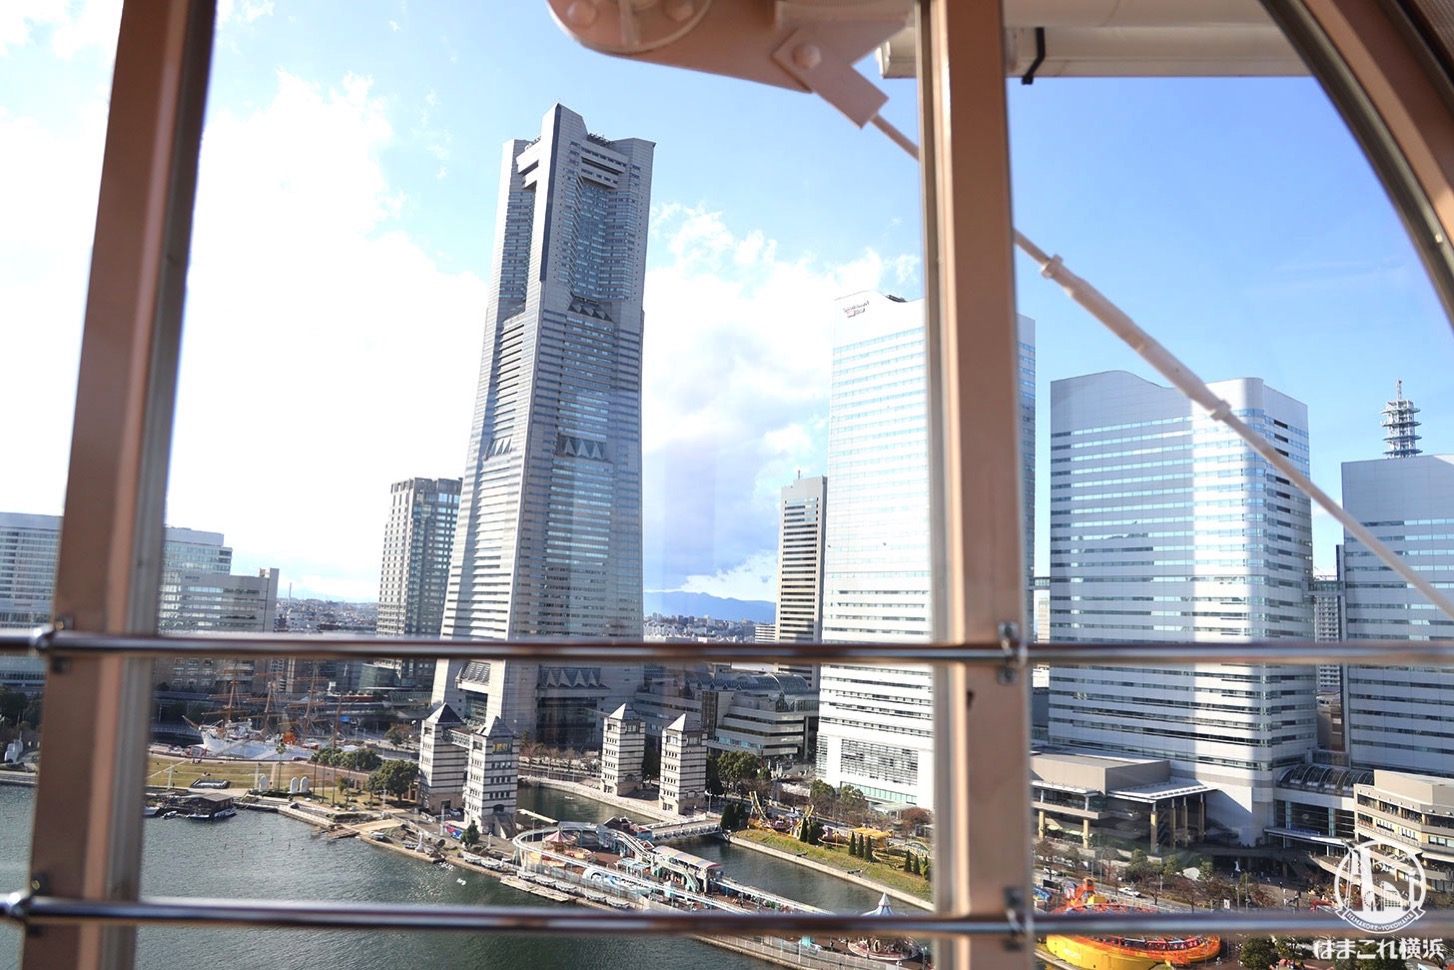 大観覧車「コスモクロック21」から見た横浜ランドマークタワー